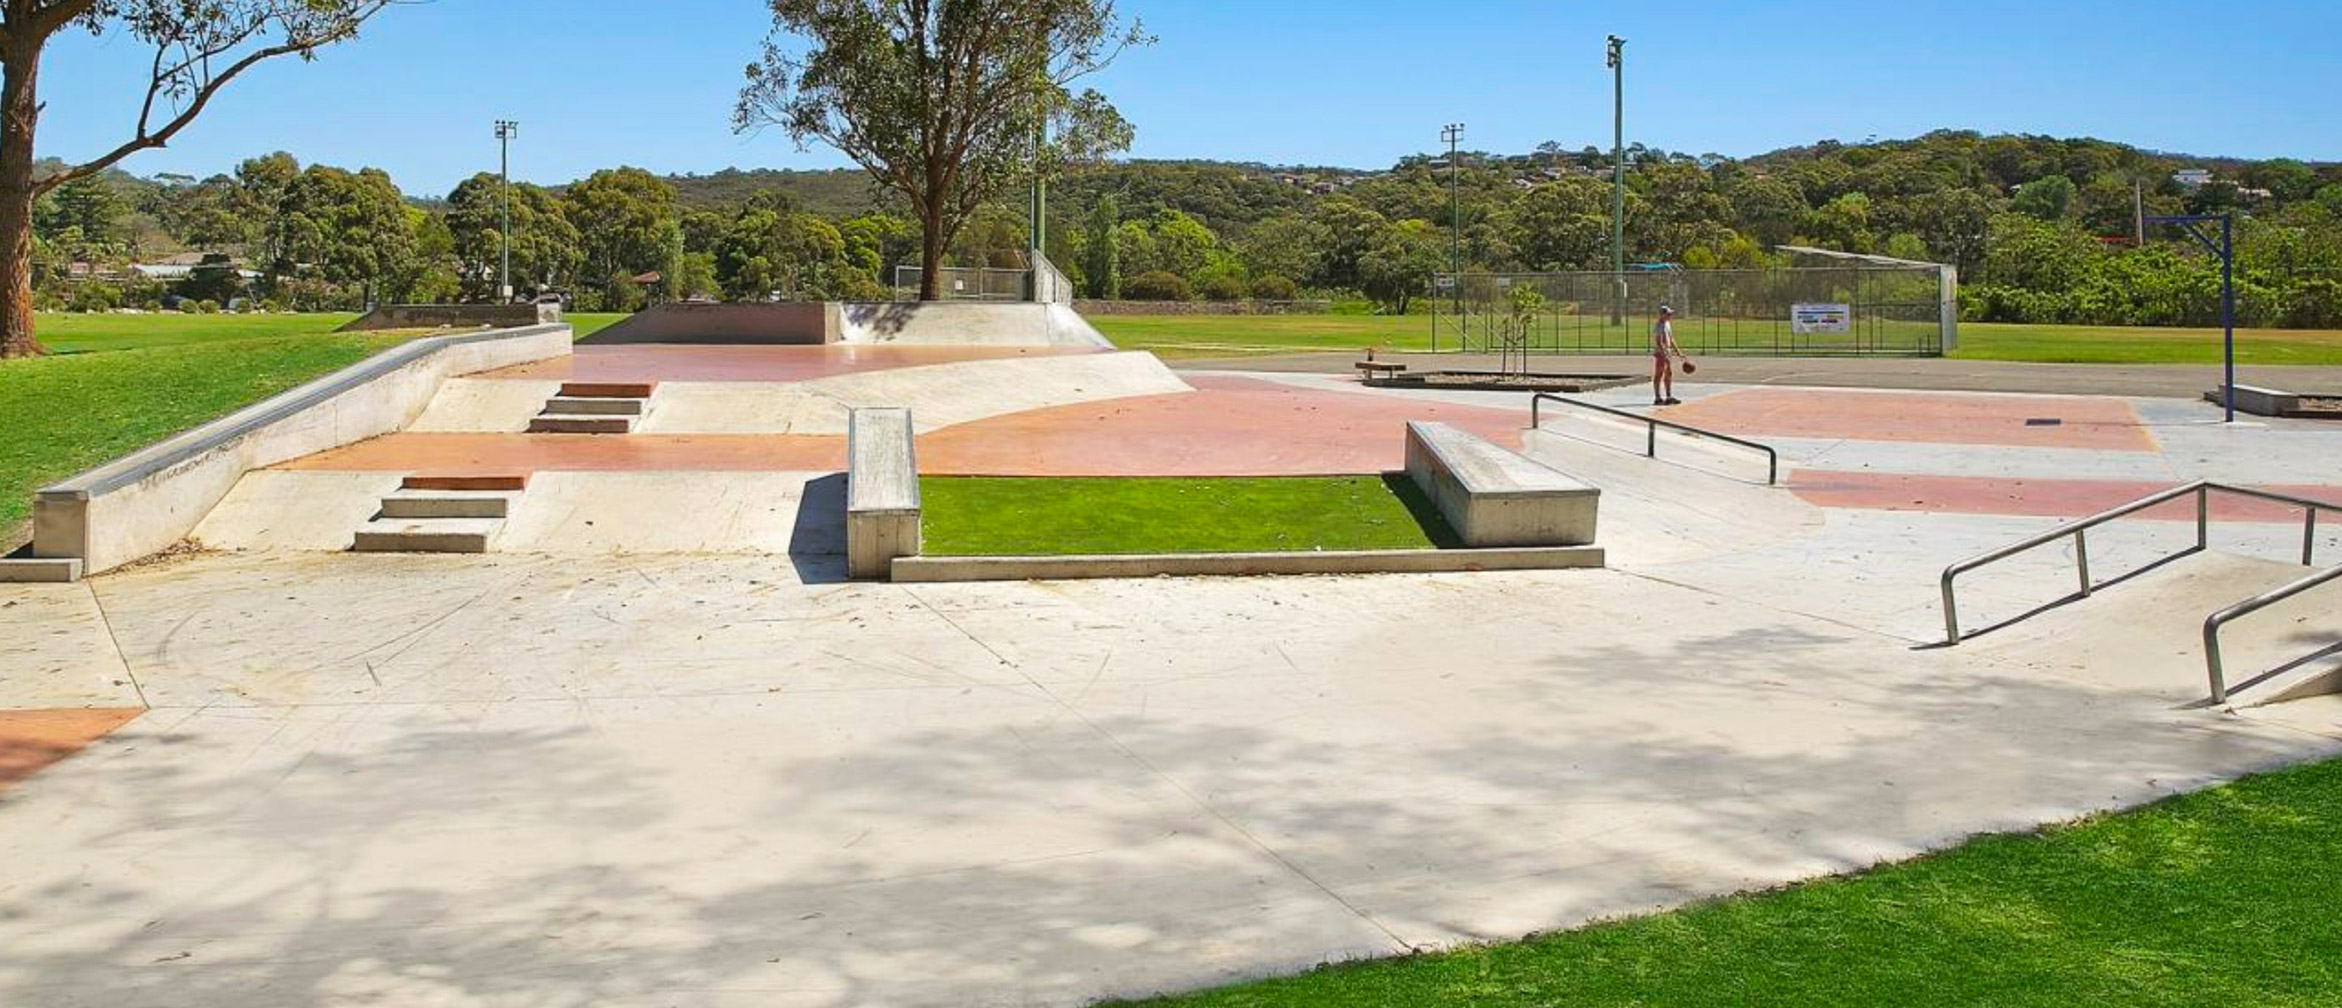 Cromer skate park grass gap, ledges, banks, rail, street section